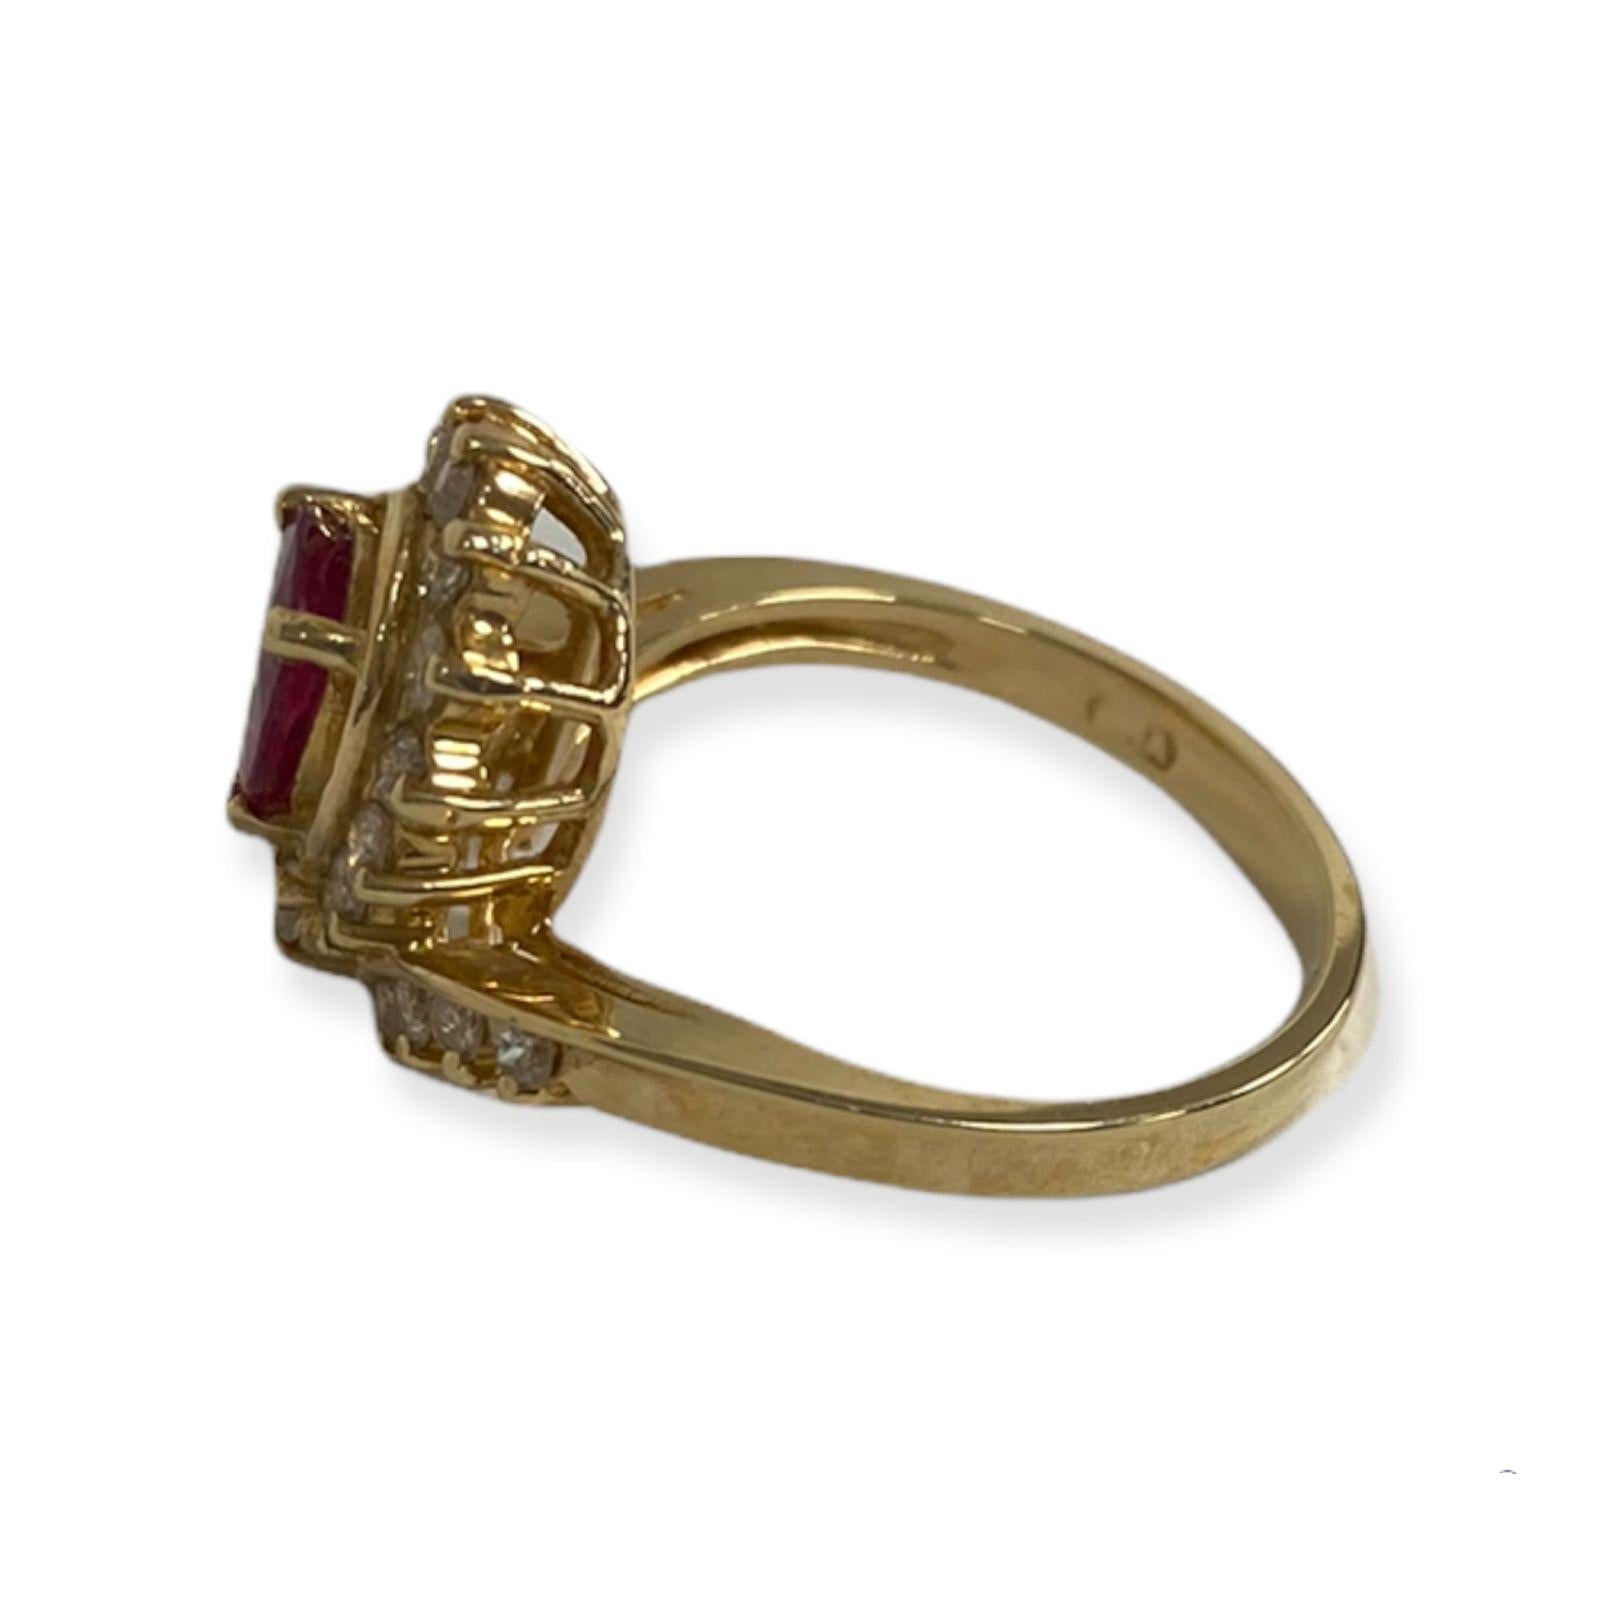 Cette bague spectaculaire de la collection Suzy Levian est en or 14k. Un ensemble de diamants blancs (.50cttw) accentue la couleur rouge parfaite de la pierre centrale, le rubis (1.00ct). La brillance de ces pierres et l'éclat de la finition polie